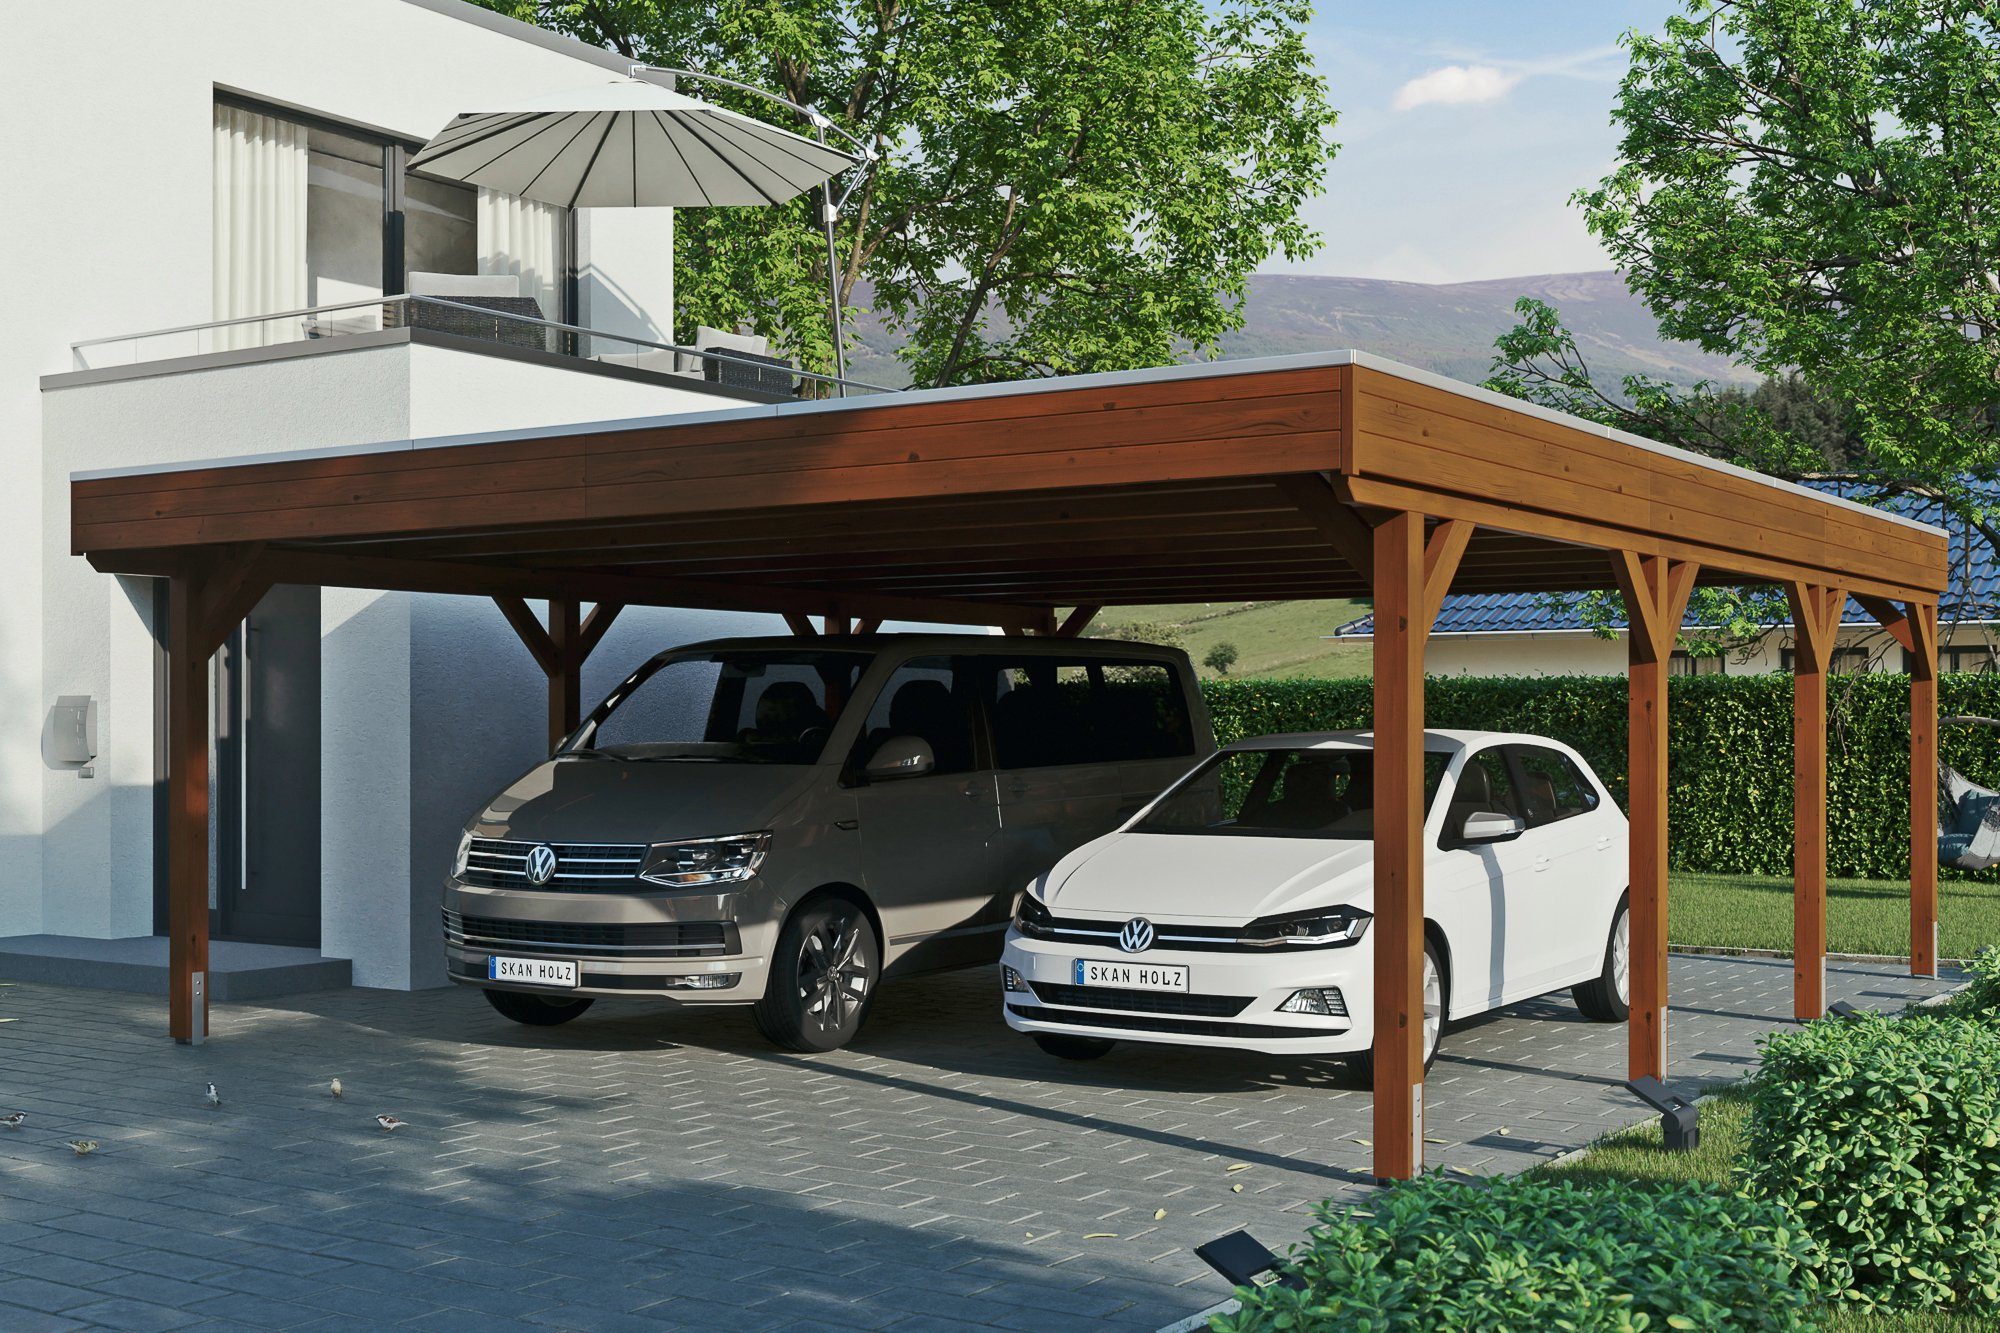 Skanholz Doppelcarport Grunewald, BxT: 622x796 cm, 590 cm Einfahrtshöhe,  mit Aluminiumdach, Flachdach mit Aluminium-Dachplatten, farblich behandelt  in nussbaum